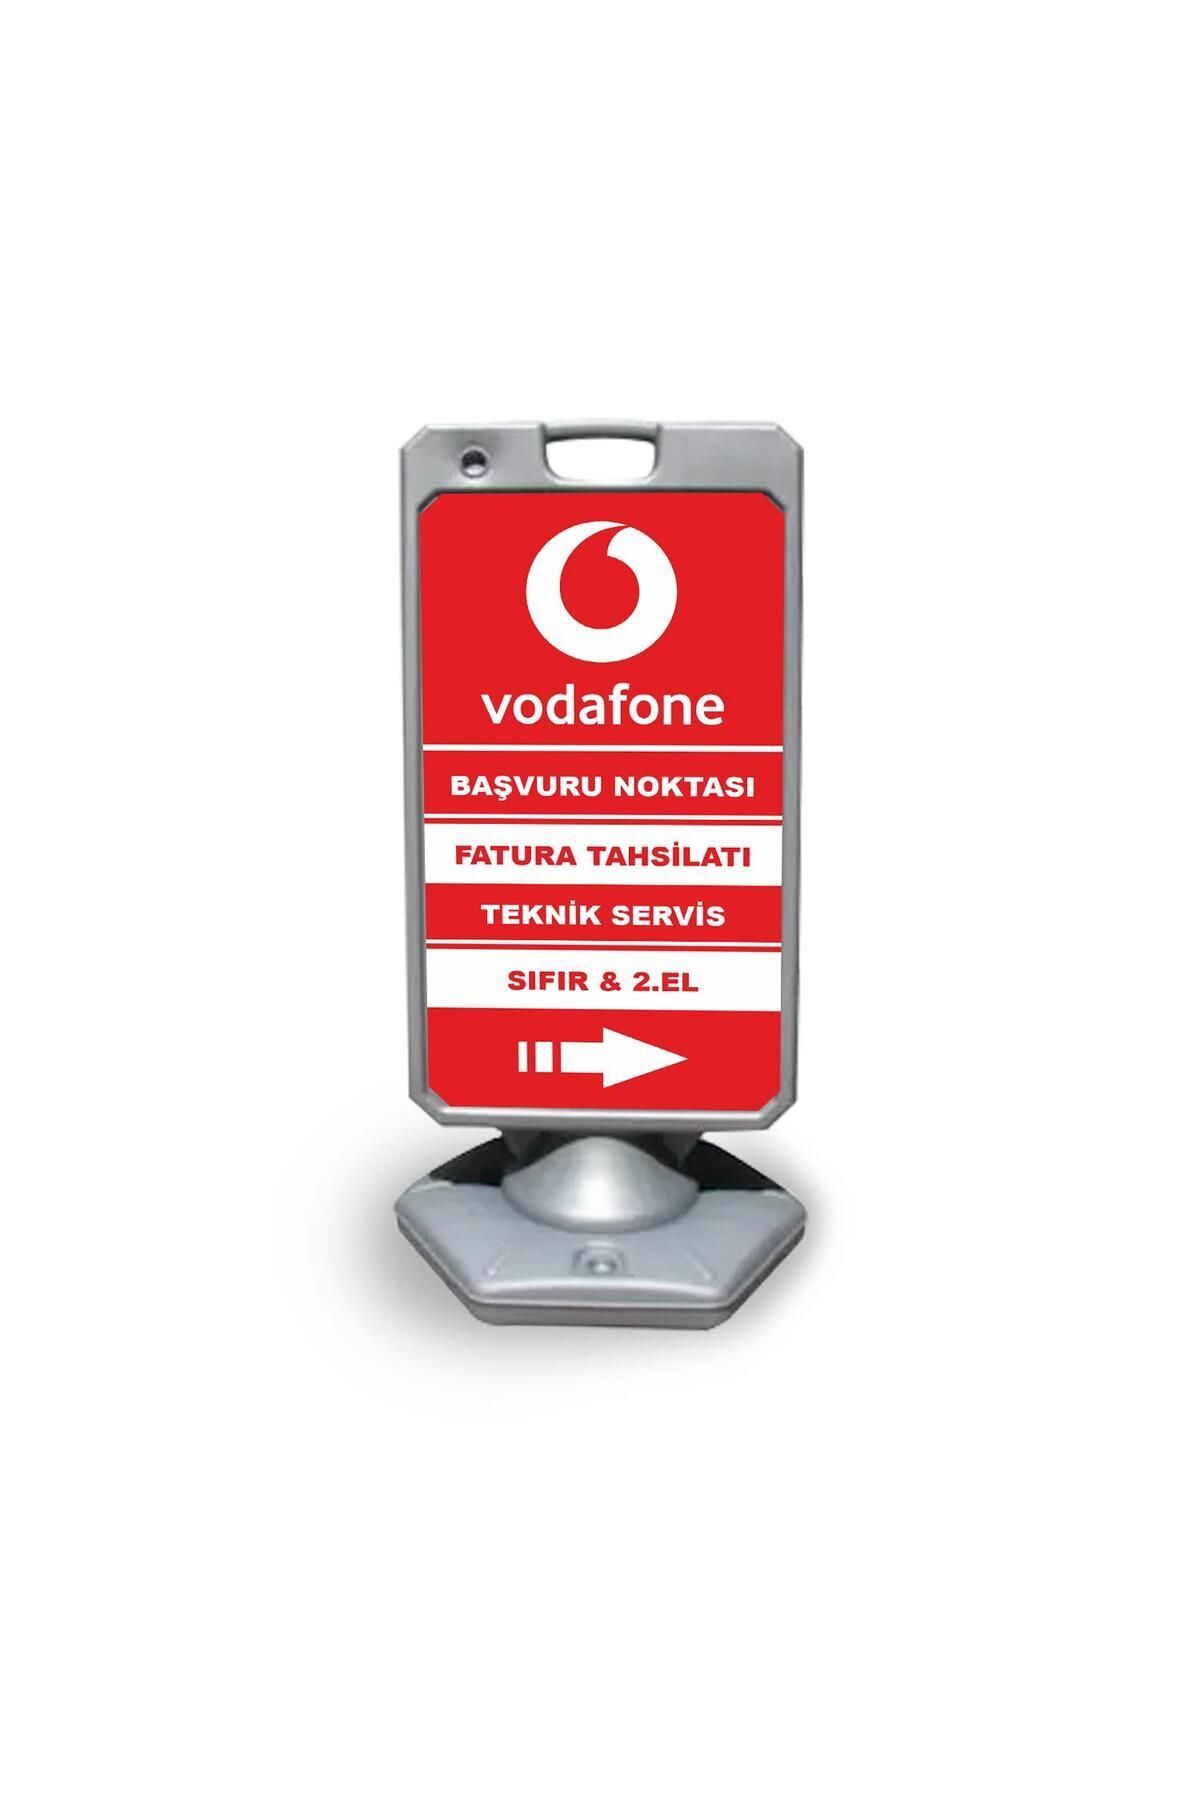 Reklamediyoruz Vodafone Reklam Ve Yönlendirme Uyari Dubasi A Tabela Gri